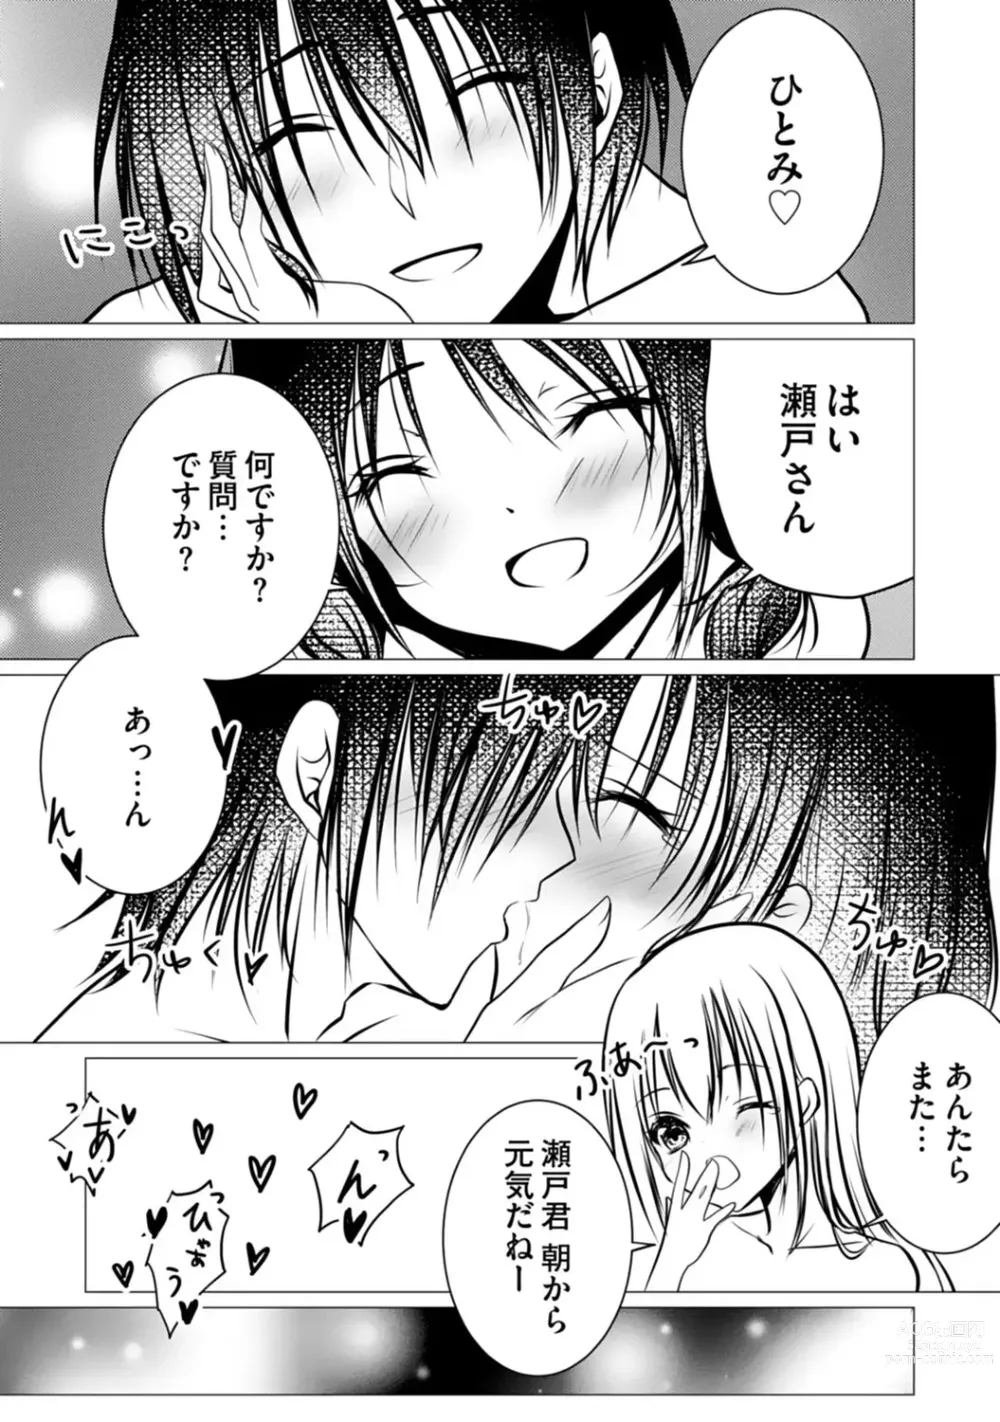 Page 107 of manga Bocchi no Boku demo, Kuzu no Yarichin ni Nareru tte Honto desu ka?